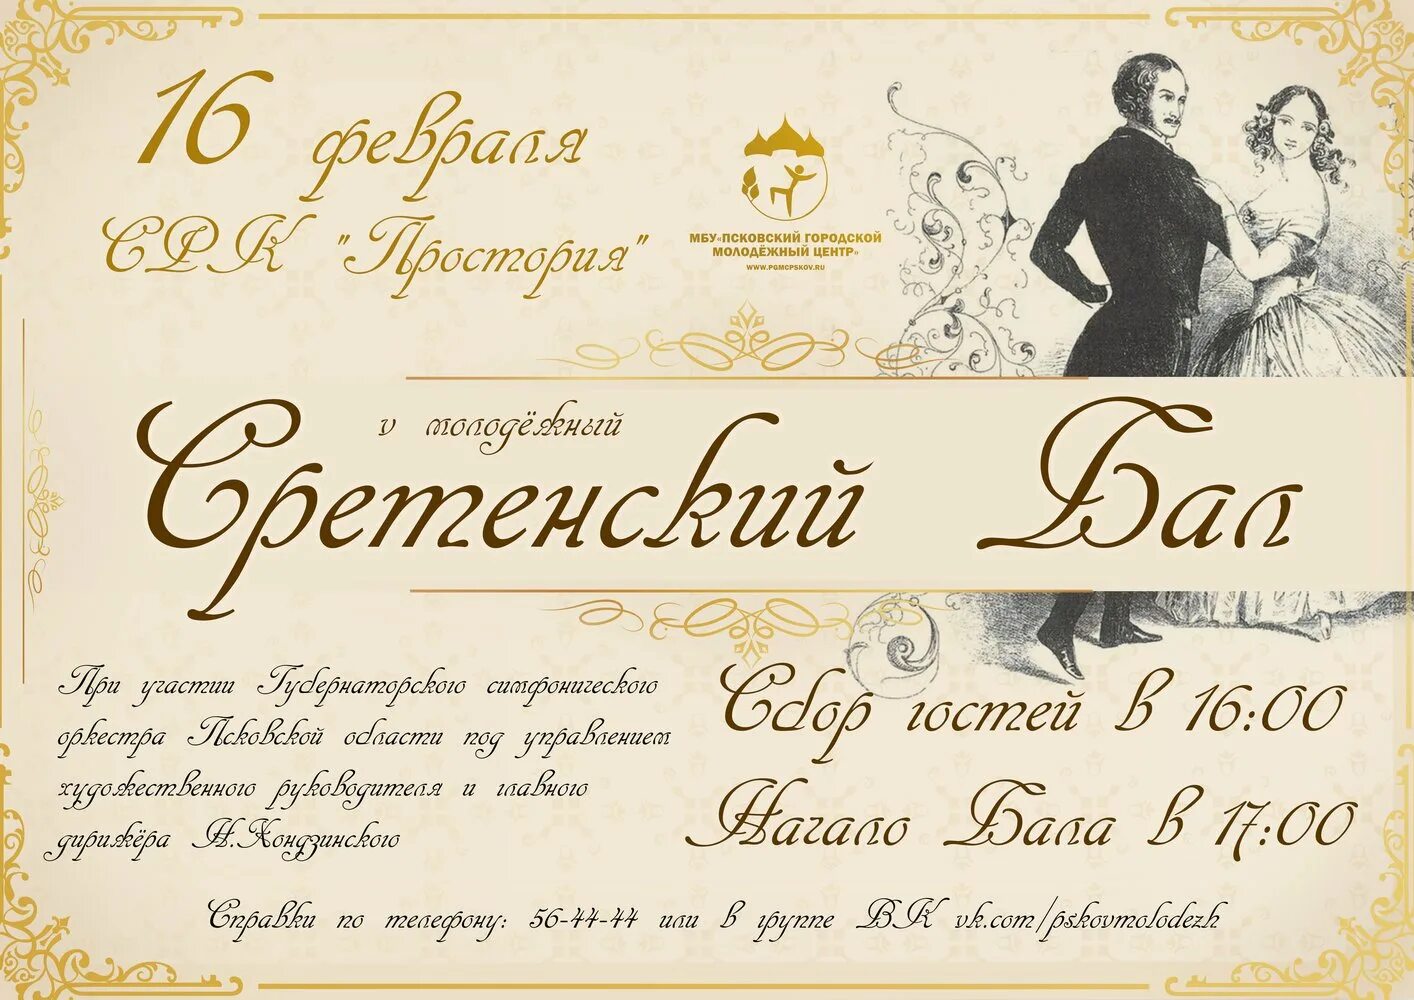 Приглашение на бал. Приглашение на бал 19 века. Пригласительный билет на бал. Приглашение на бал 18 века.